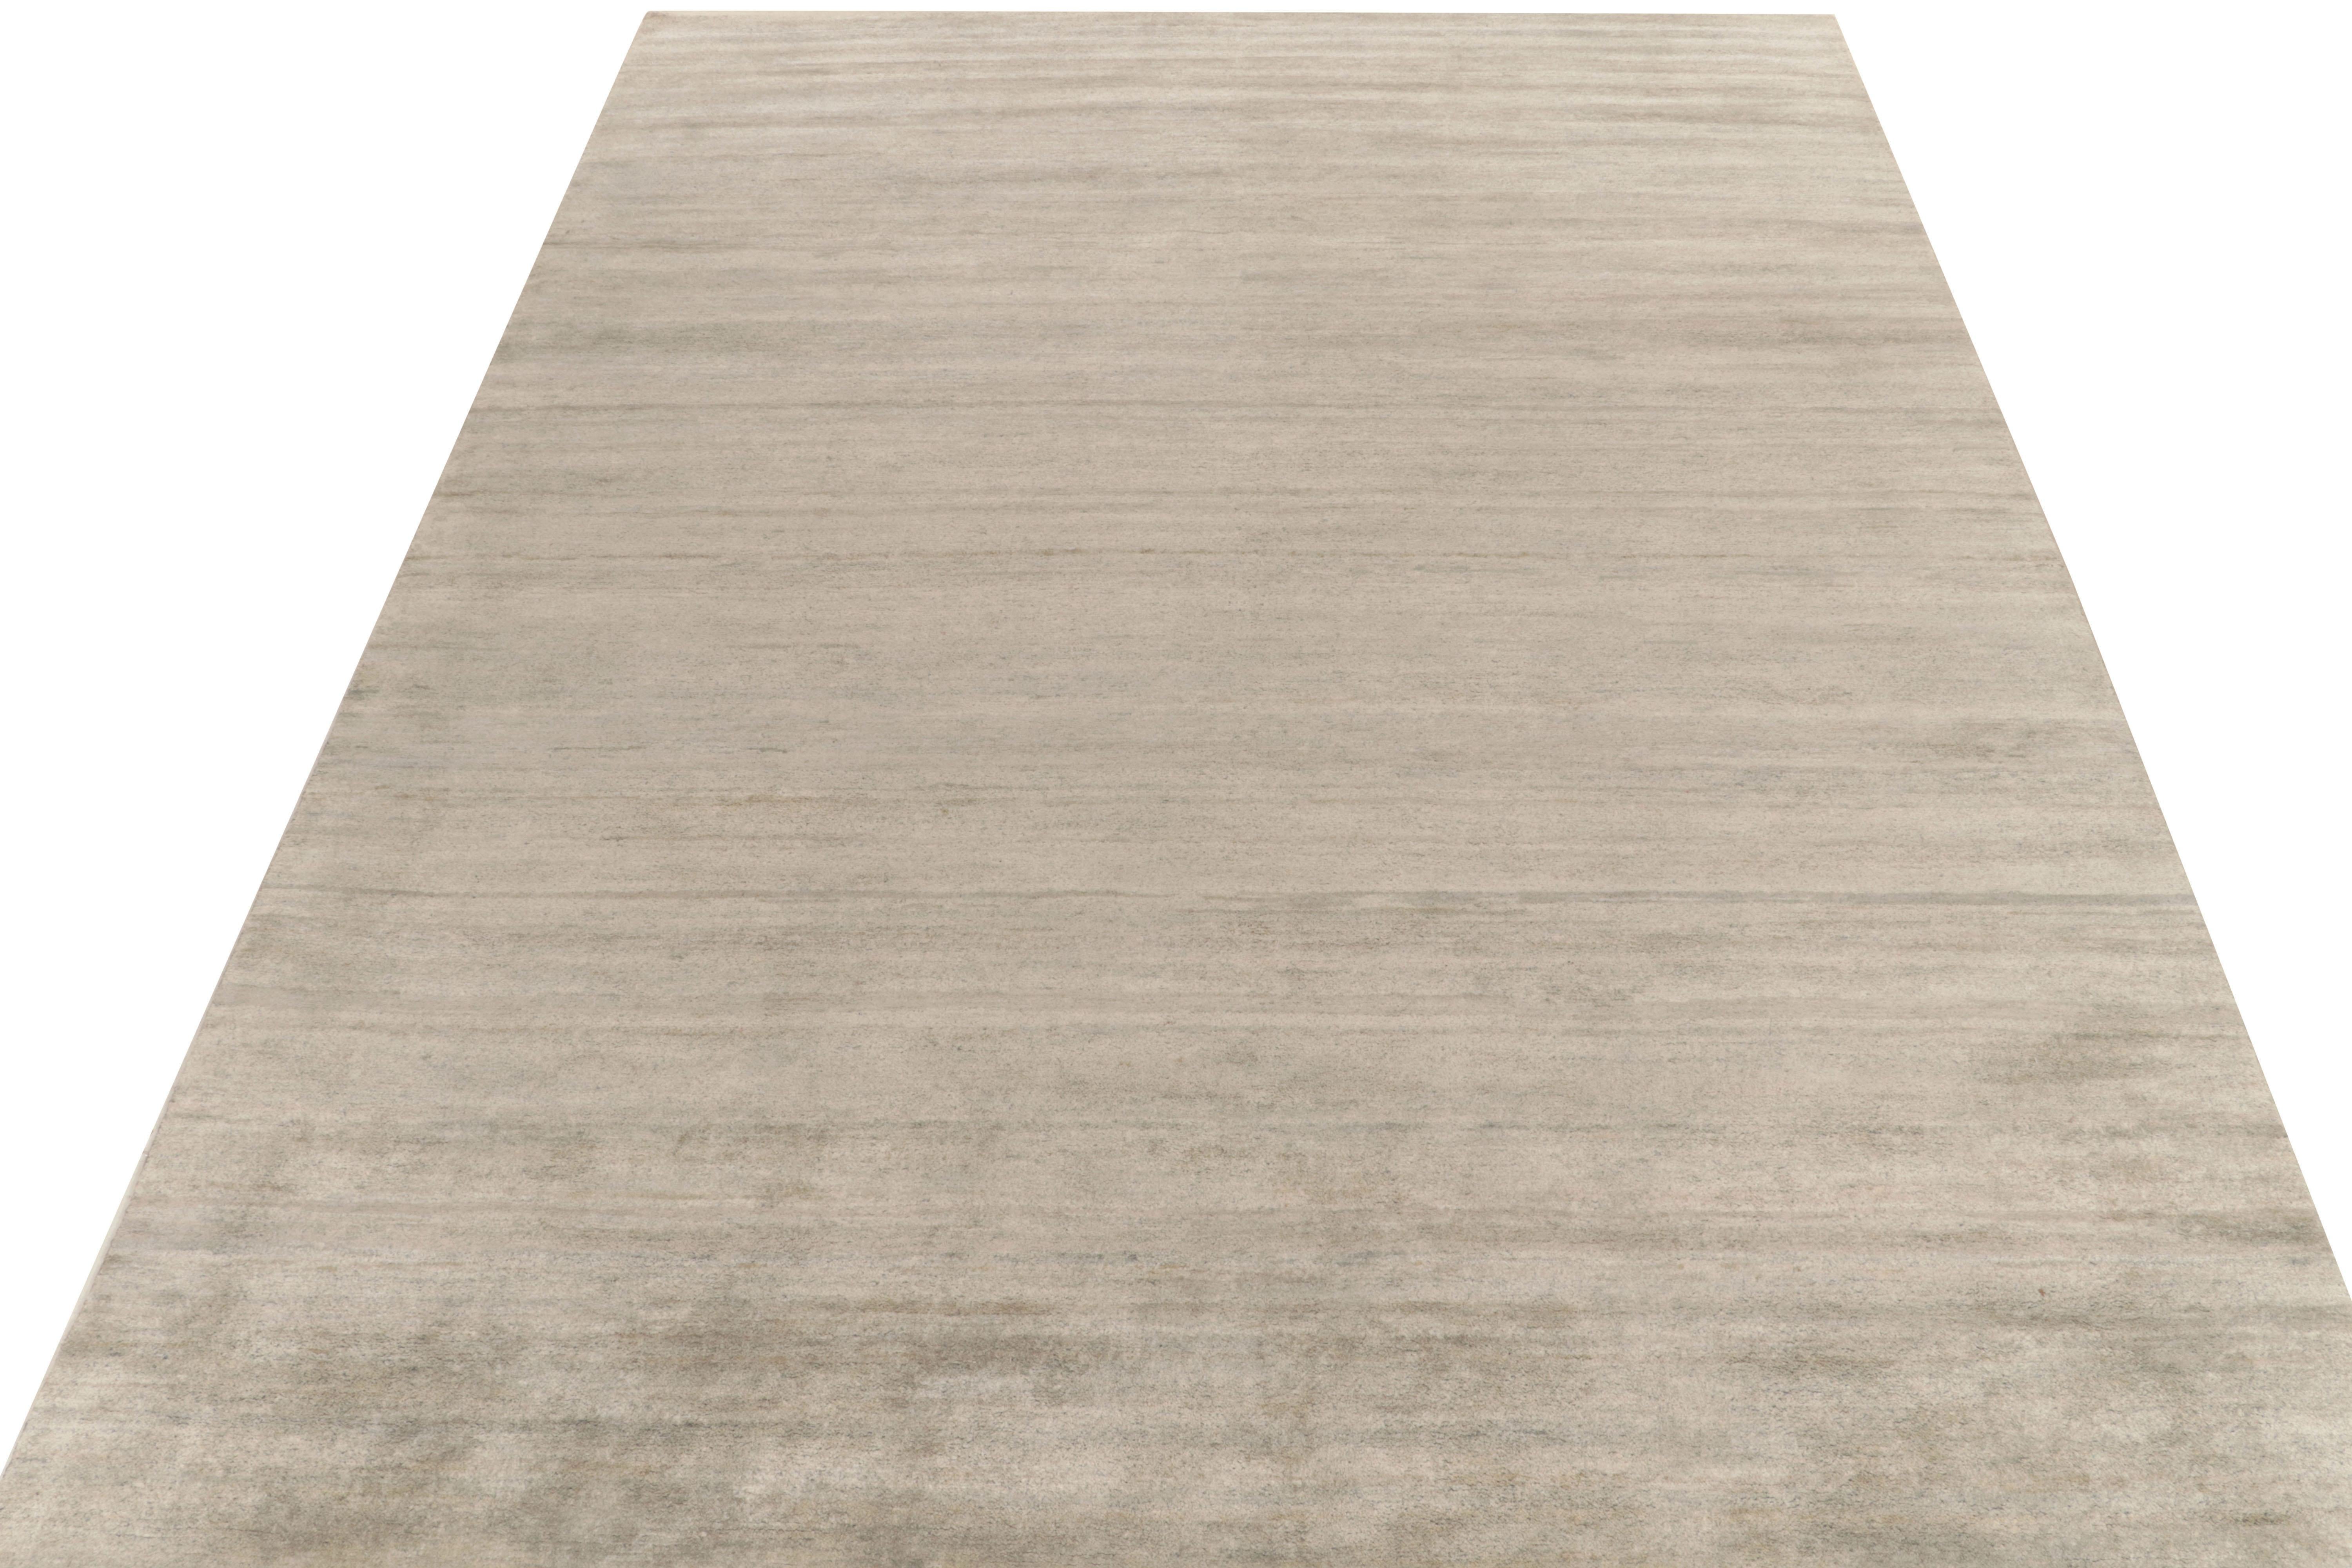 Rug & Kilim présente sa version raffinée de l'esthétique moderne avec ce tapis gris uni et élégant en 10x14 de notre collection Texture of Color. Cette pièce contemporaine arbore un coloris mature de gris argenté et de bleu clair, illustrant le